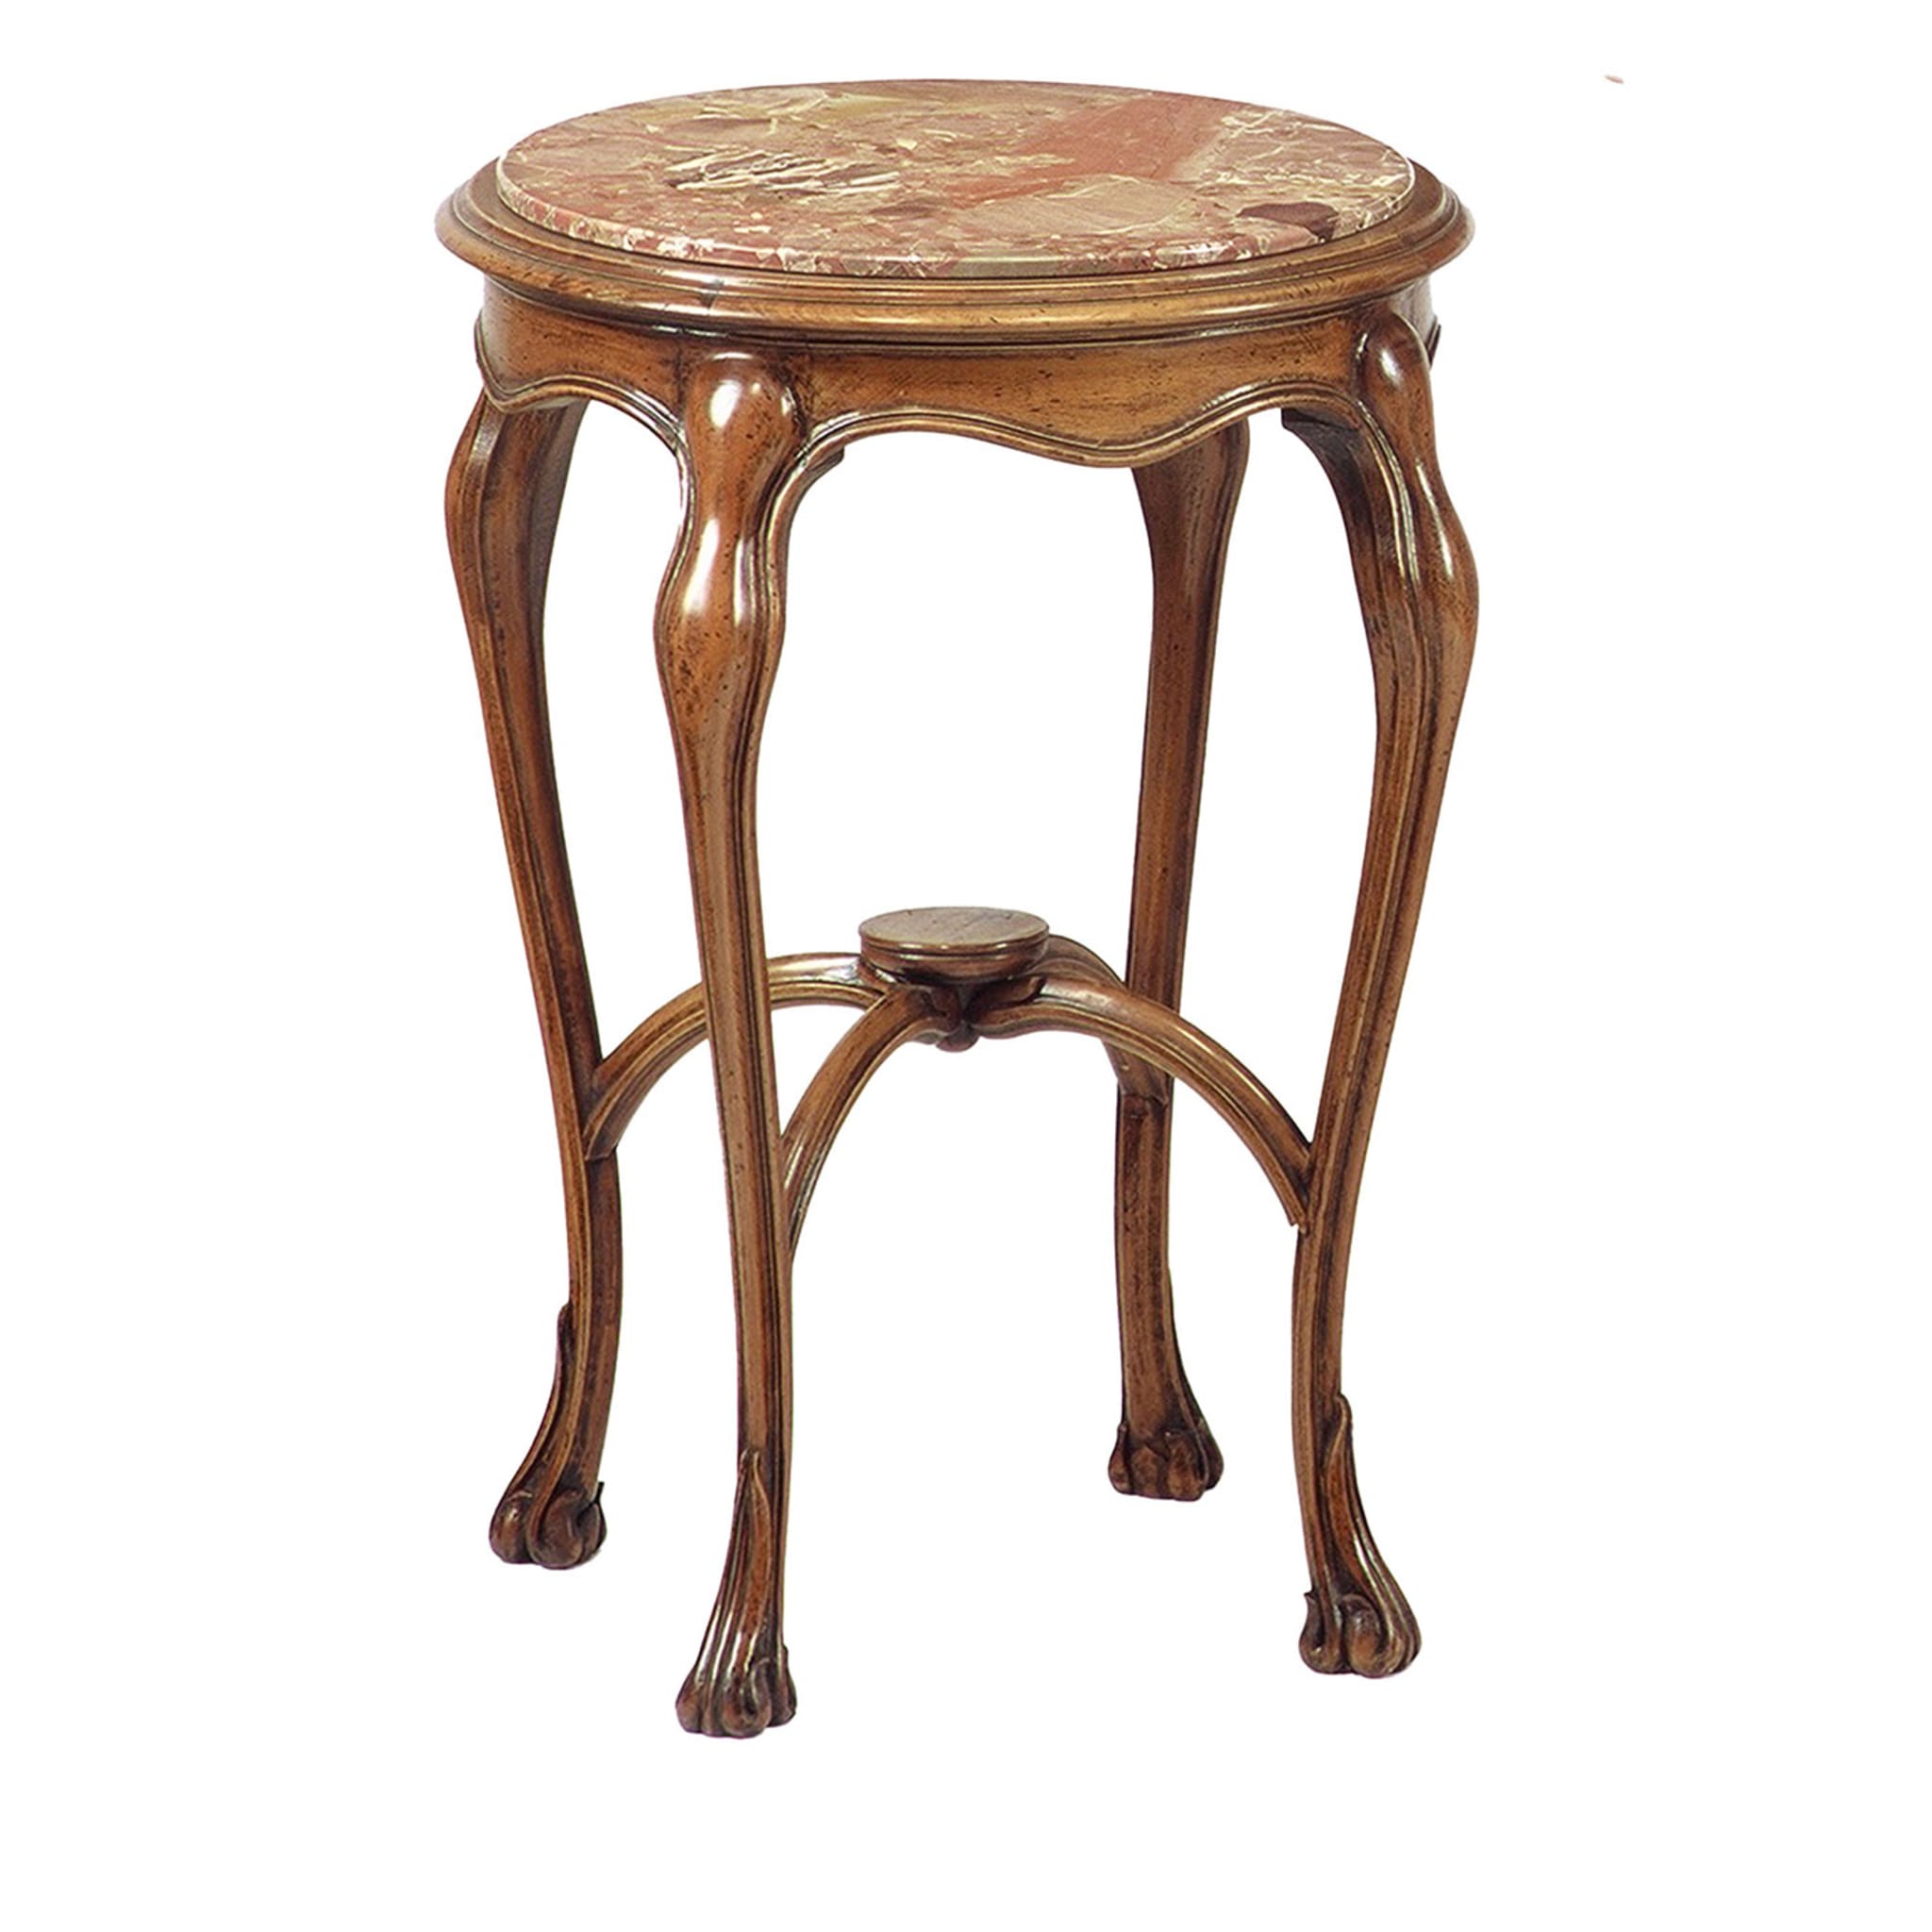 Table d'appoint ronde de style Art nouveau français avec plateau en macchiavecchia - Vue principale